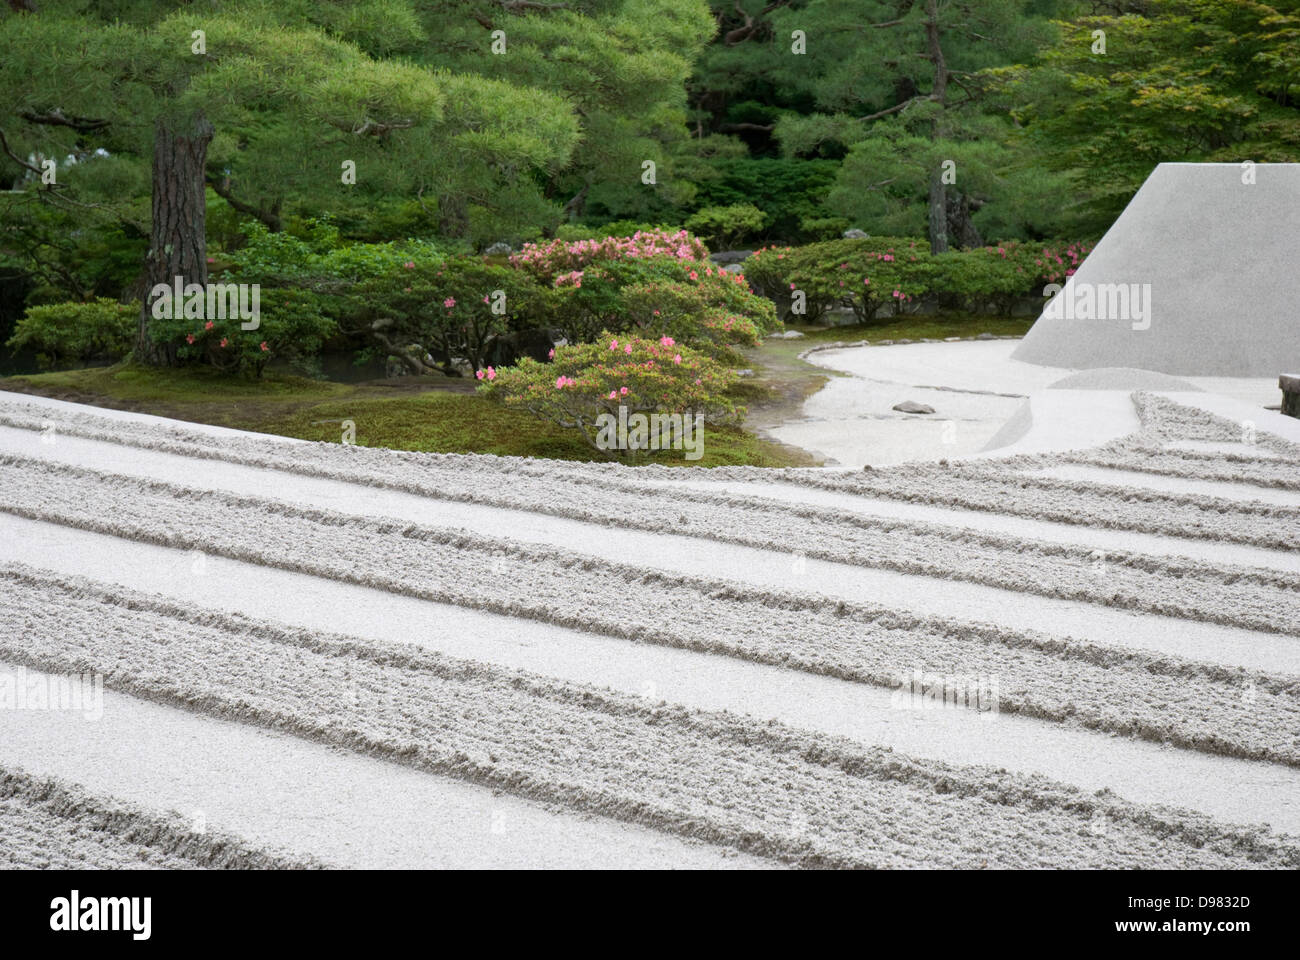 Jardin zen de sable Ginshadan sculpture au pavillon de l'argent Ginkakuji Temple Kyoto au Japon Banque D'Images